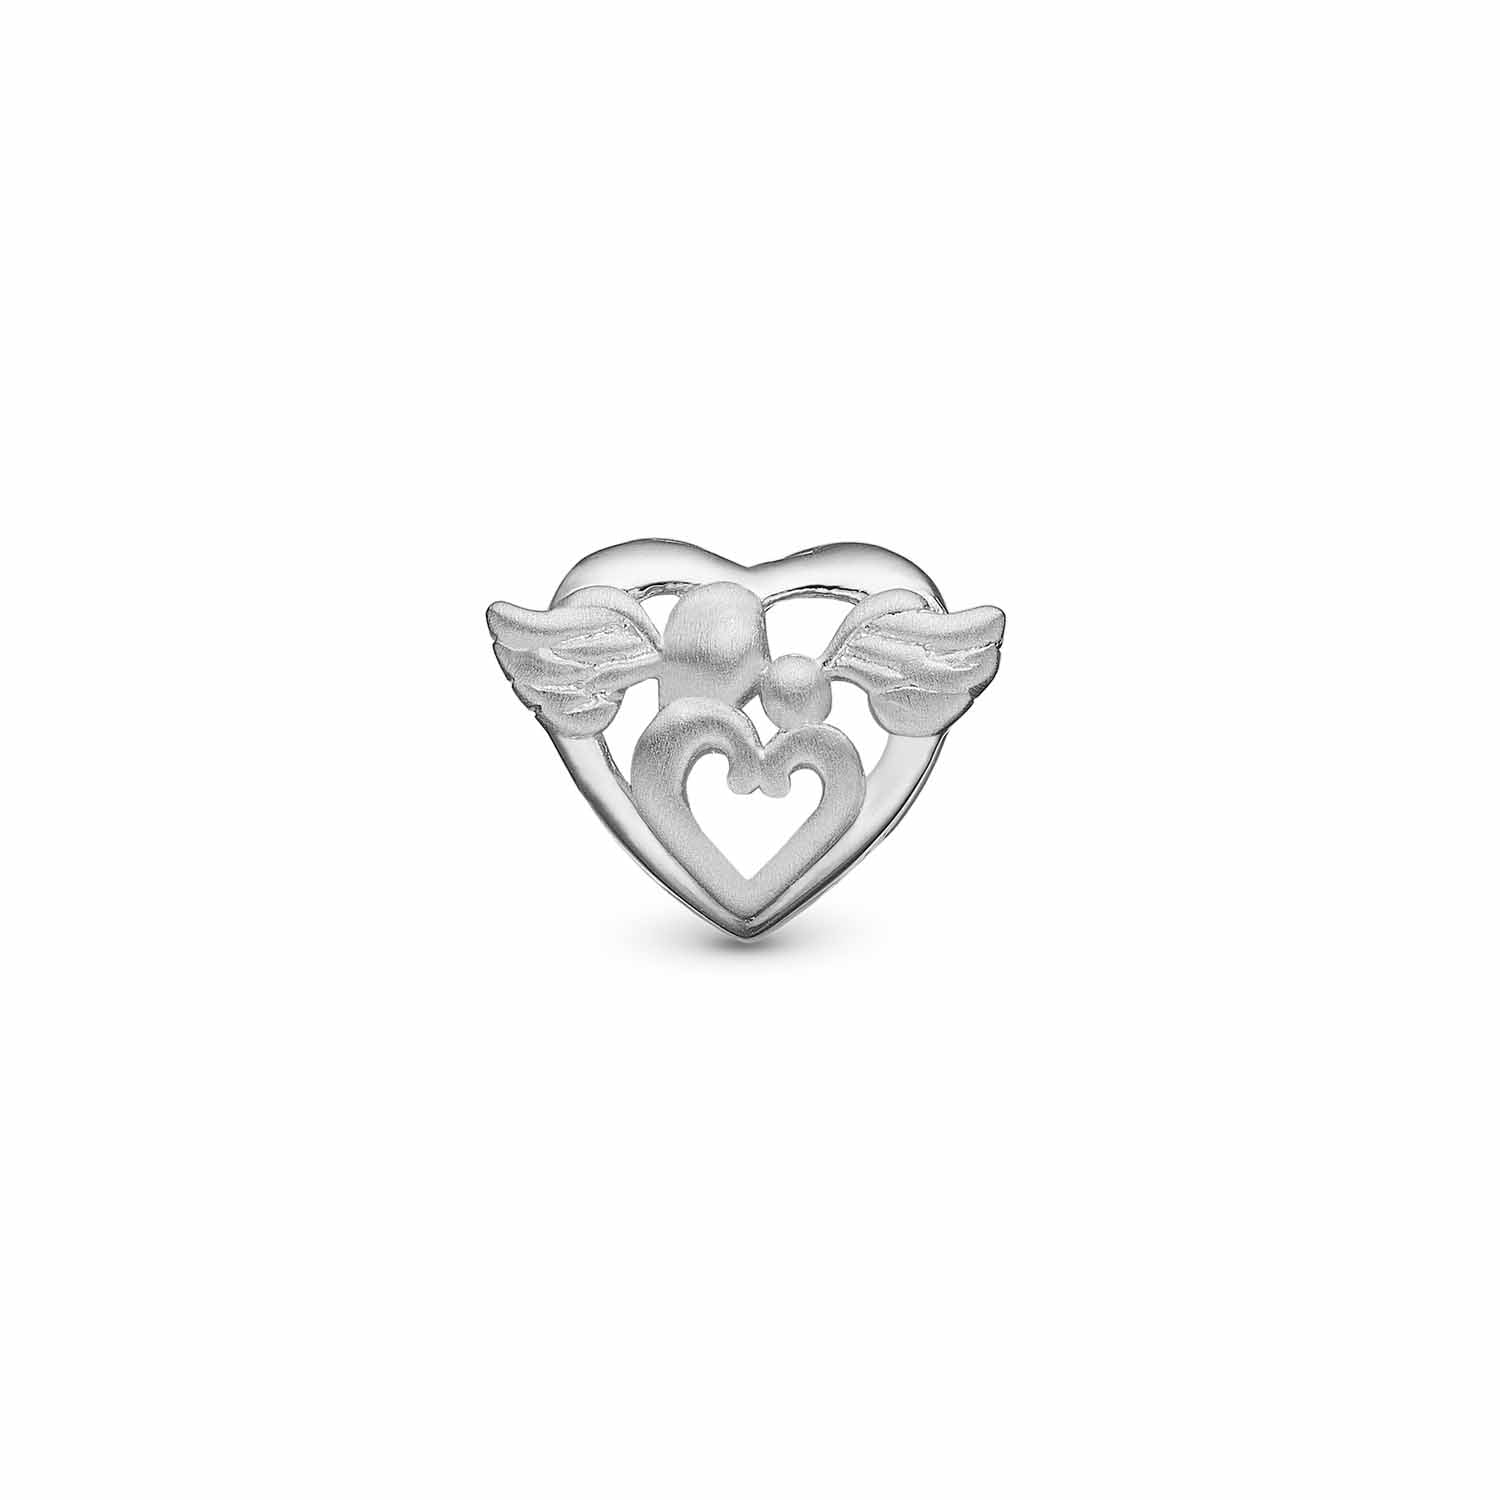 Billede af Christina Design London Jewelry & Watches - Guardian Angel charm sølv sterlingsølv